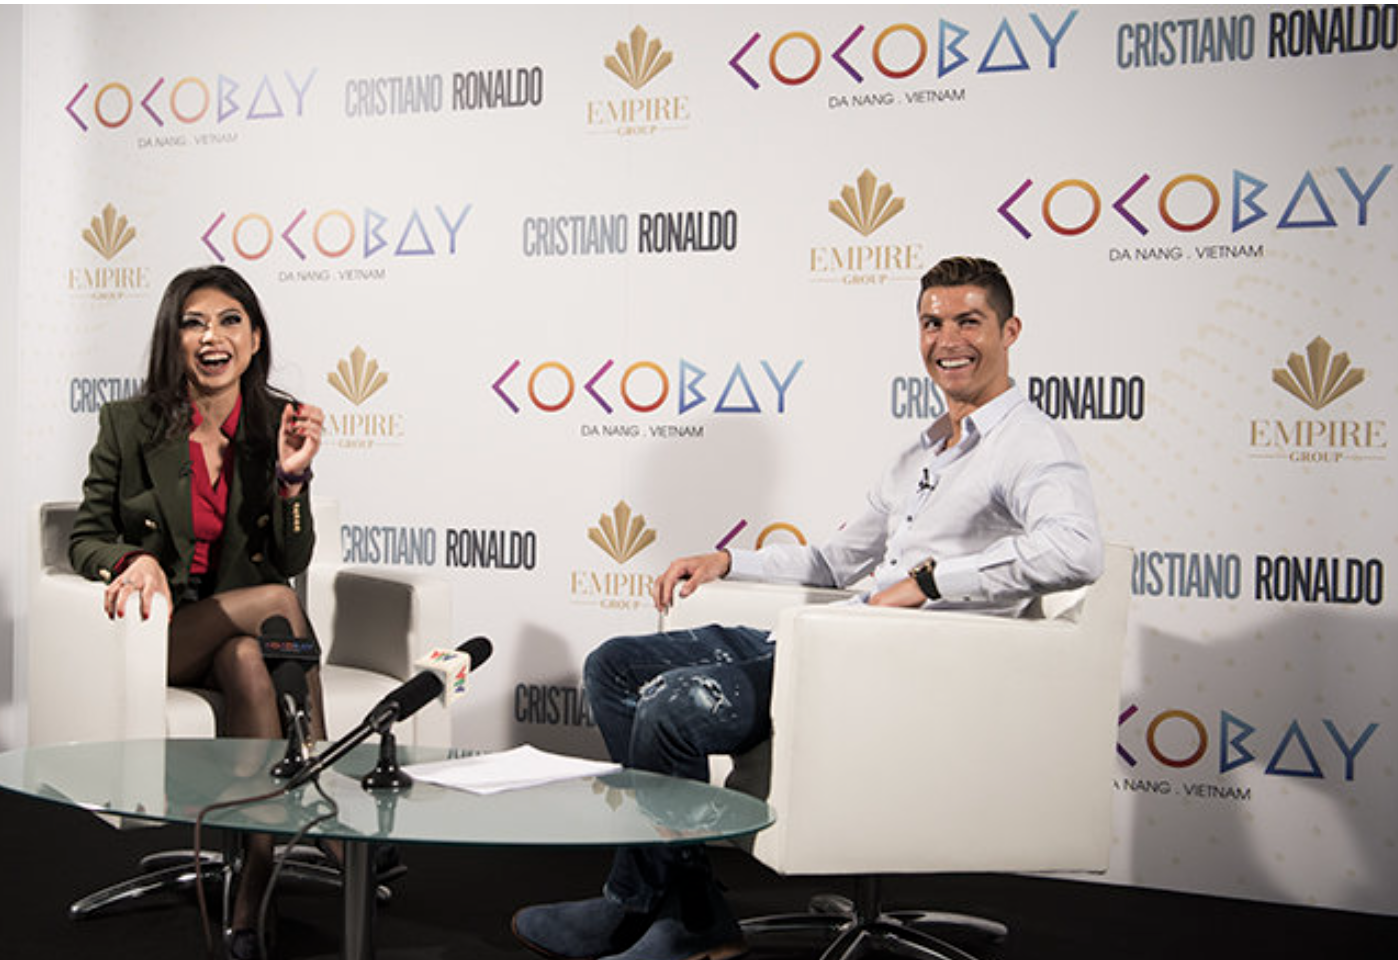 Sự kiện “Cocobay Into The World” siêu sao bóng đá thế giới Cristiano Ronaldo (CR7) cũng chính thức đặt bút ký tên trở thành khách hàng danh dự giữ chỗ đặt mua Condotel tại Cocobay Towers.